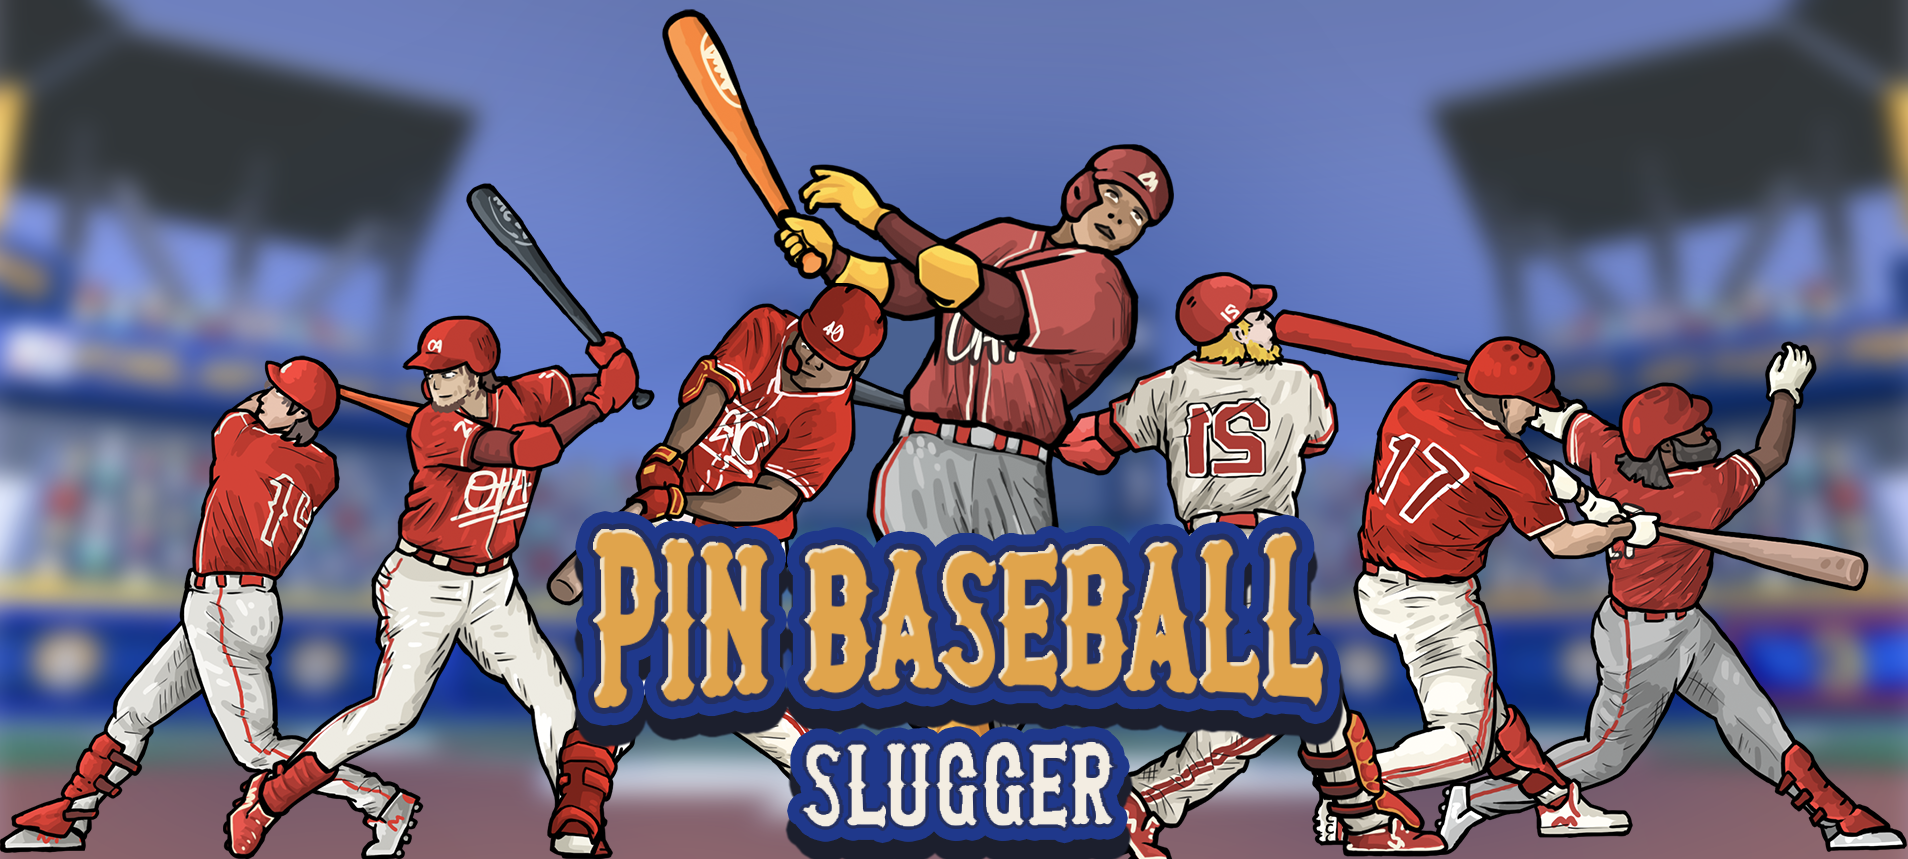 Screenshot 1 of Pin trò chơi bóng chày - slugger 2.0.0